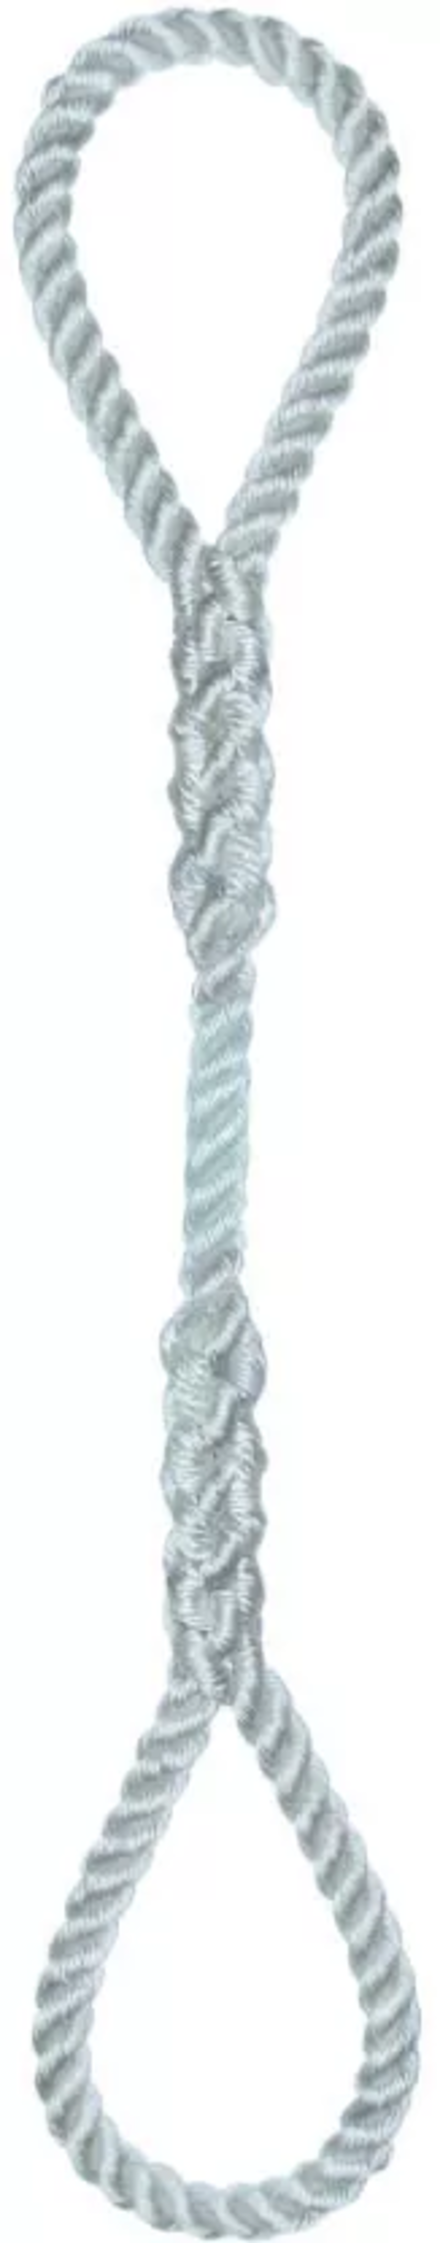 Élingue corde d.10 mm cmu 138 kg 2 grandes boucles long 1 m LEVAC - 4404F